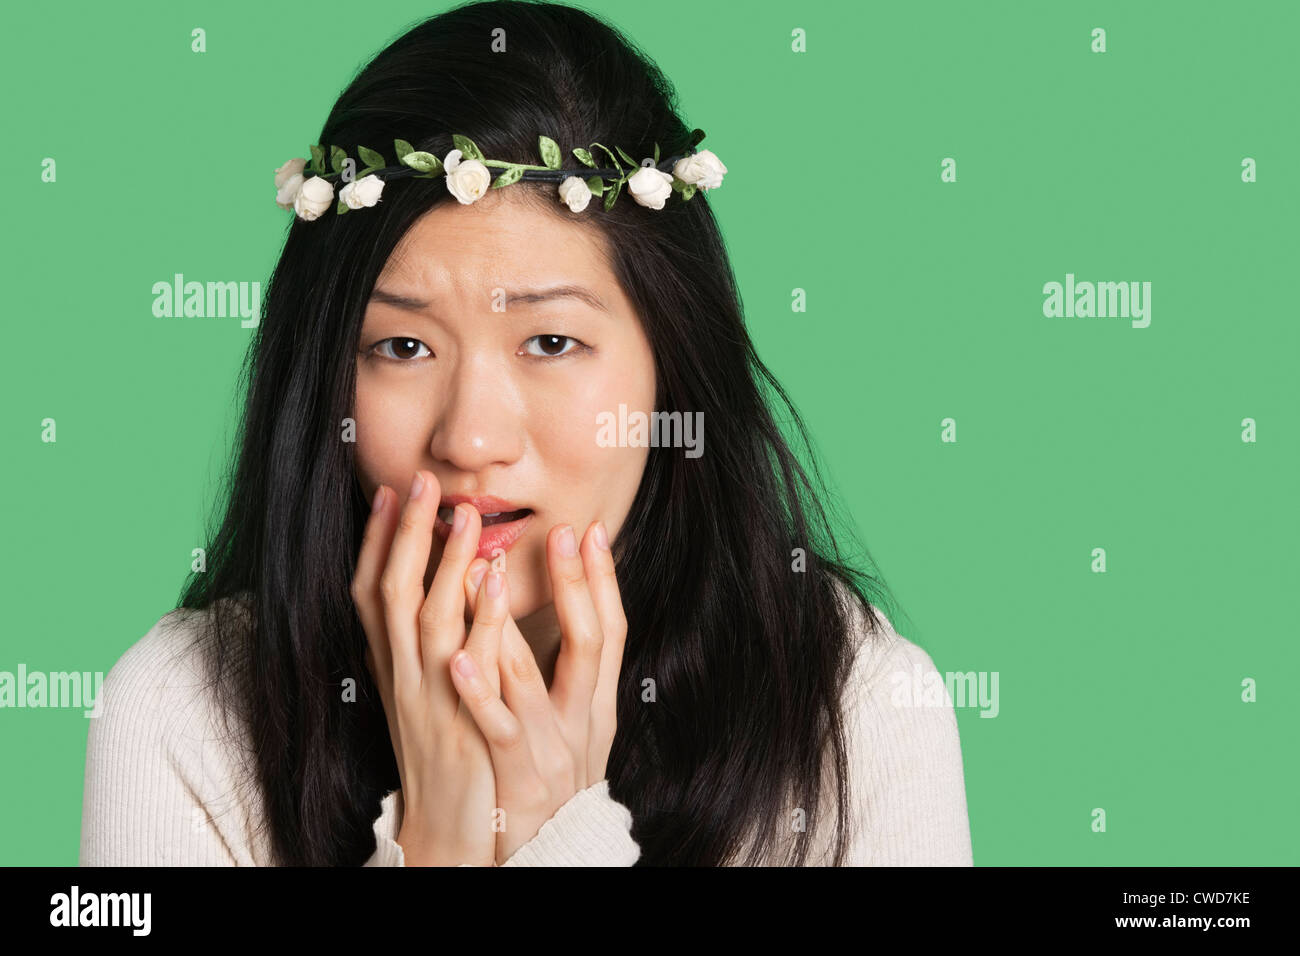 Ritratto di una giovane donna che esprimono la paura e l'ansia su sfondo verde Foto Stock